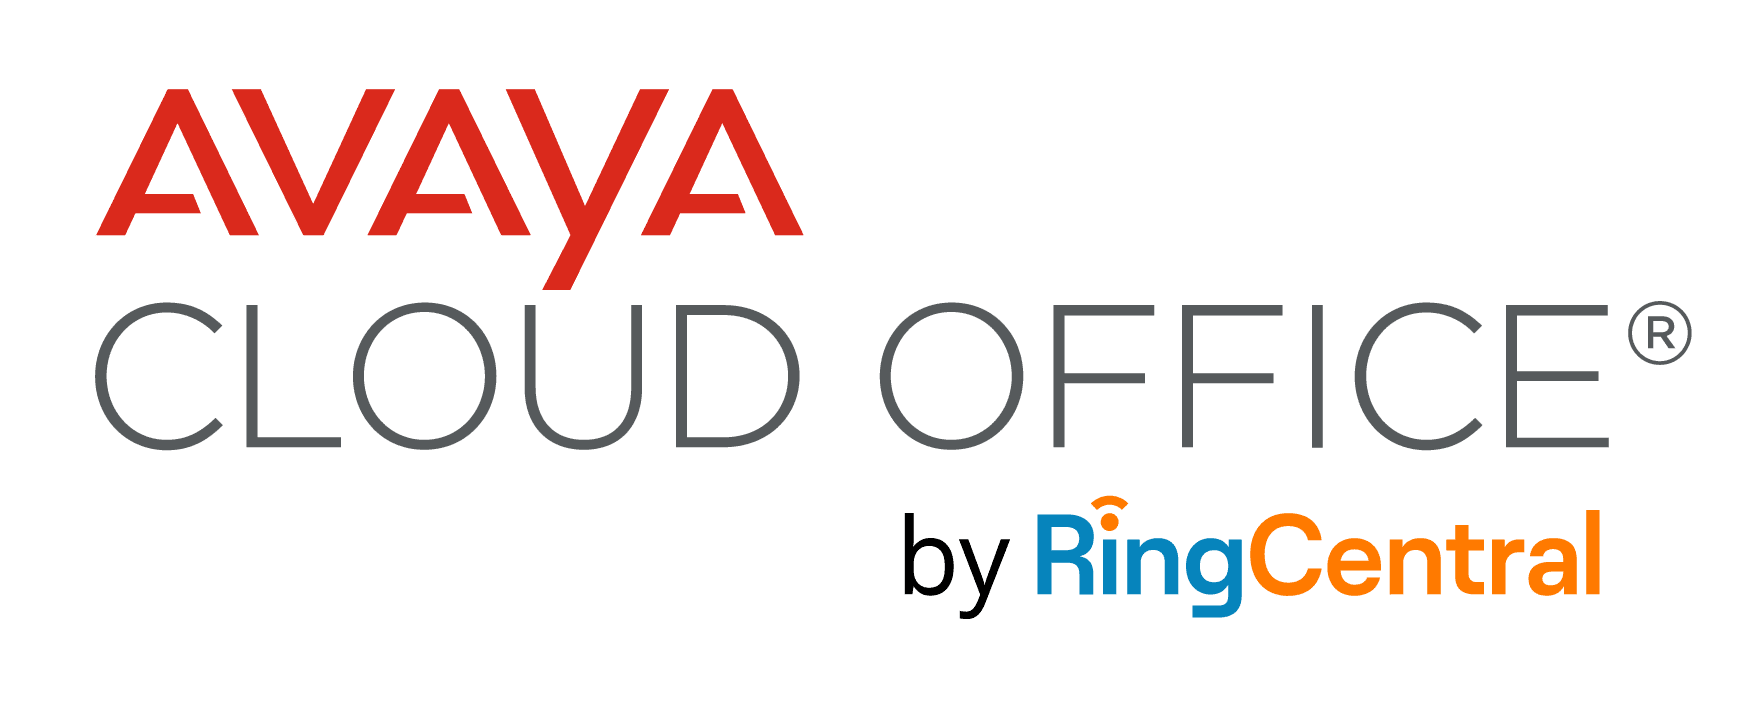 Top 4 Reasons to Choose Avaya Cloud Office